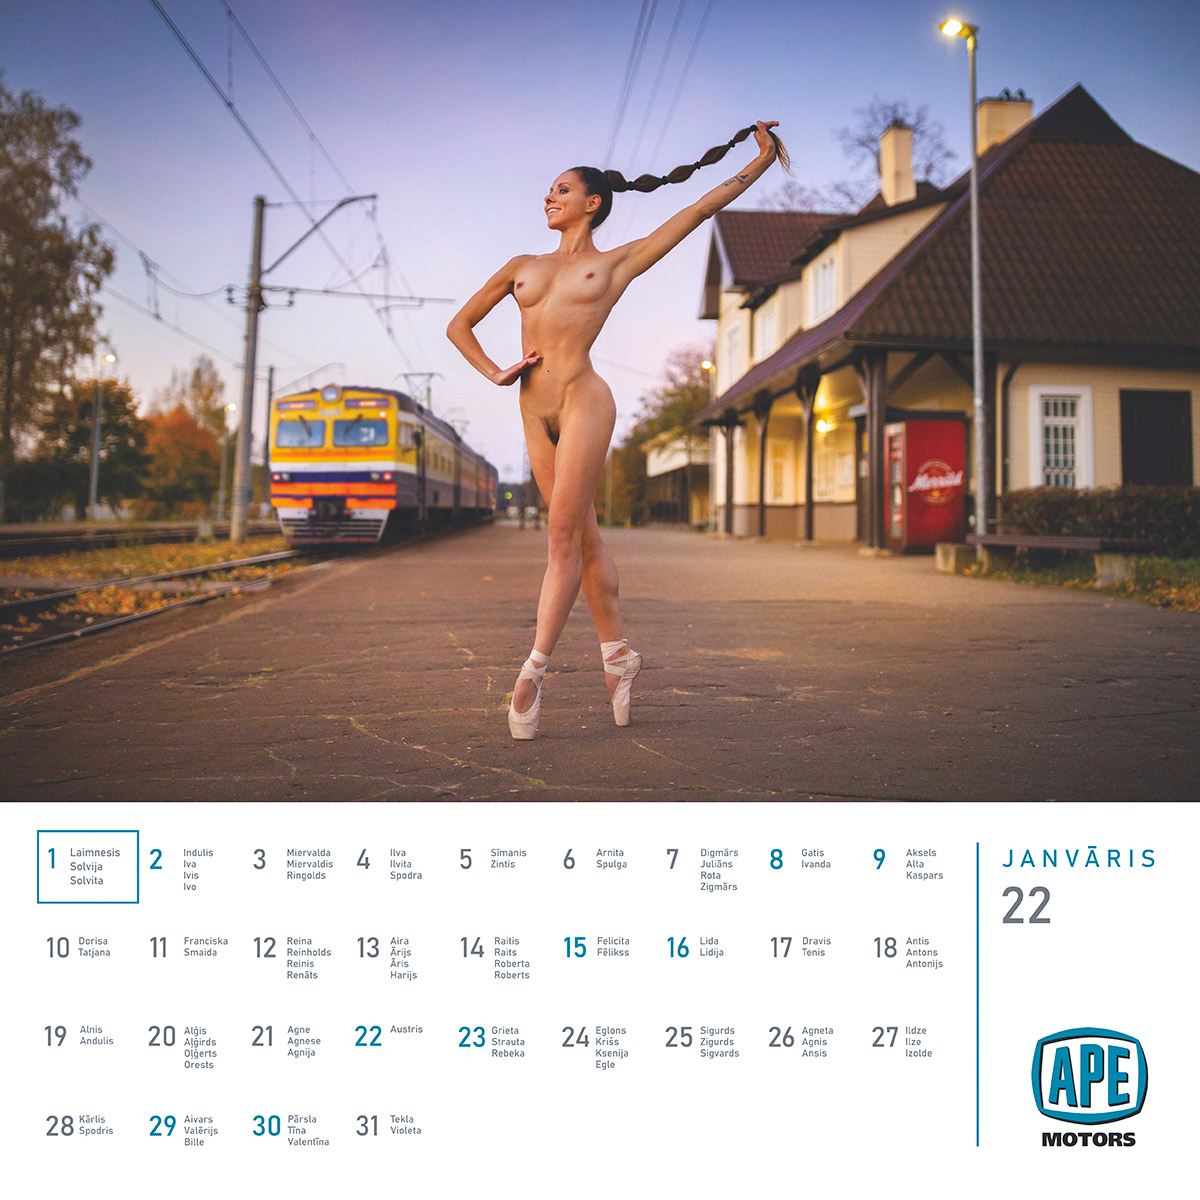 Mārtiņš Plūme | Erotisks kalendārs 2022 gadam (lielais kalendārs) APE Motors | Foto Martins Plume kailfoto kalendars nude calendar 2